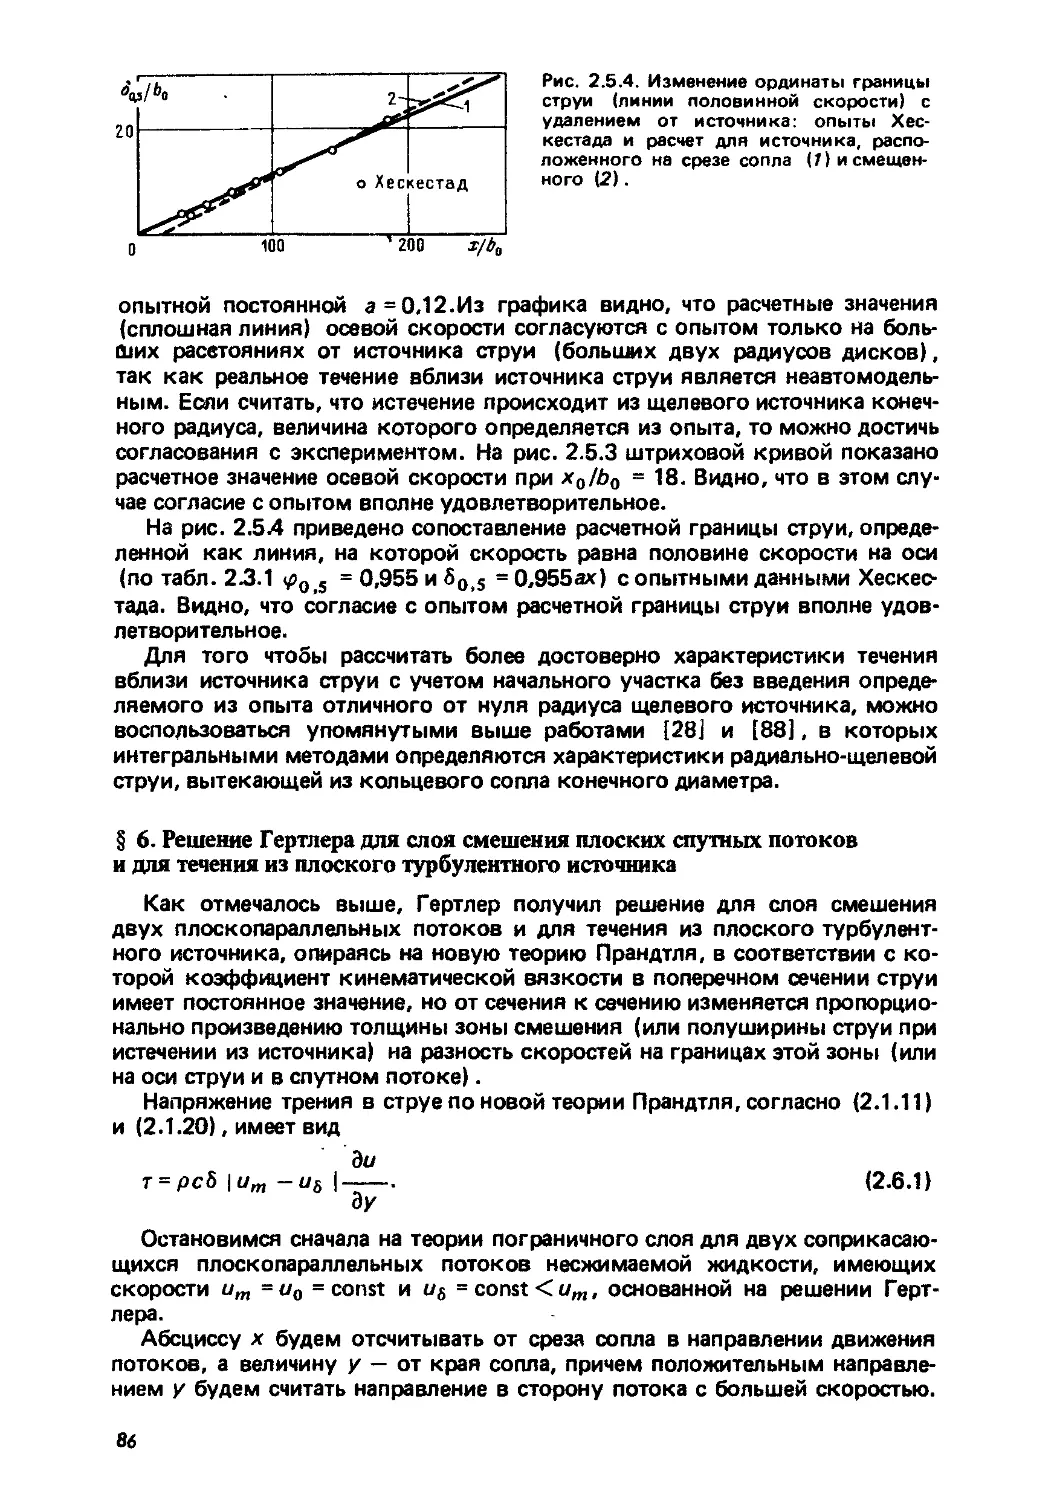 § 6. Решение Гертлера для слоя смешения плоских спутных потоков и для течения из плоского турбулентного источника